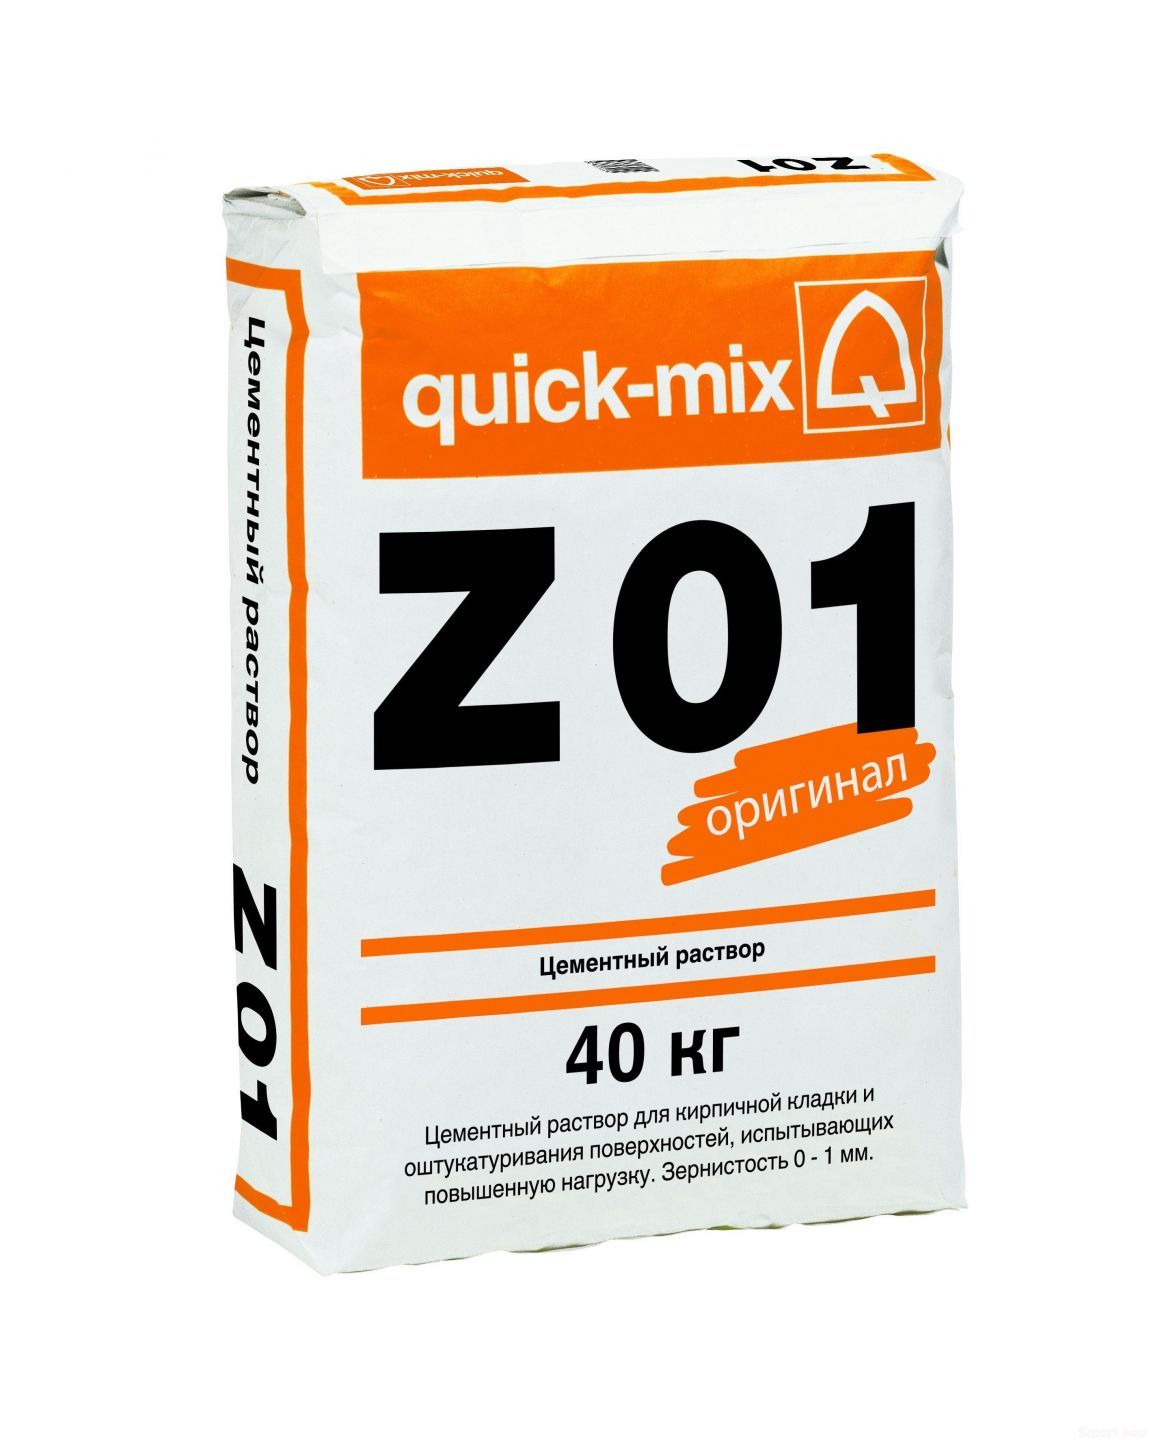 Цементный раствор quick-mix Z 01